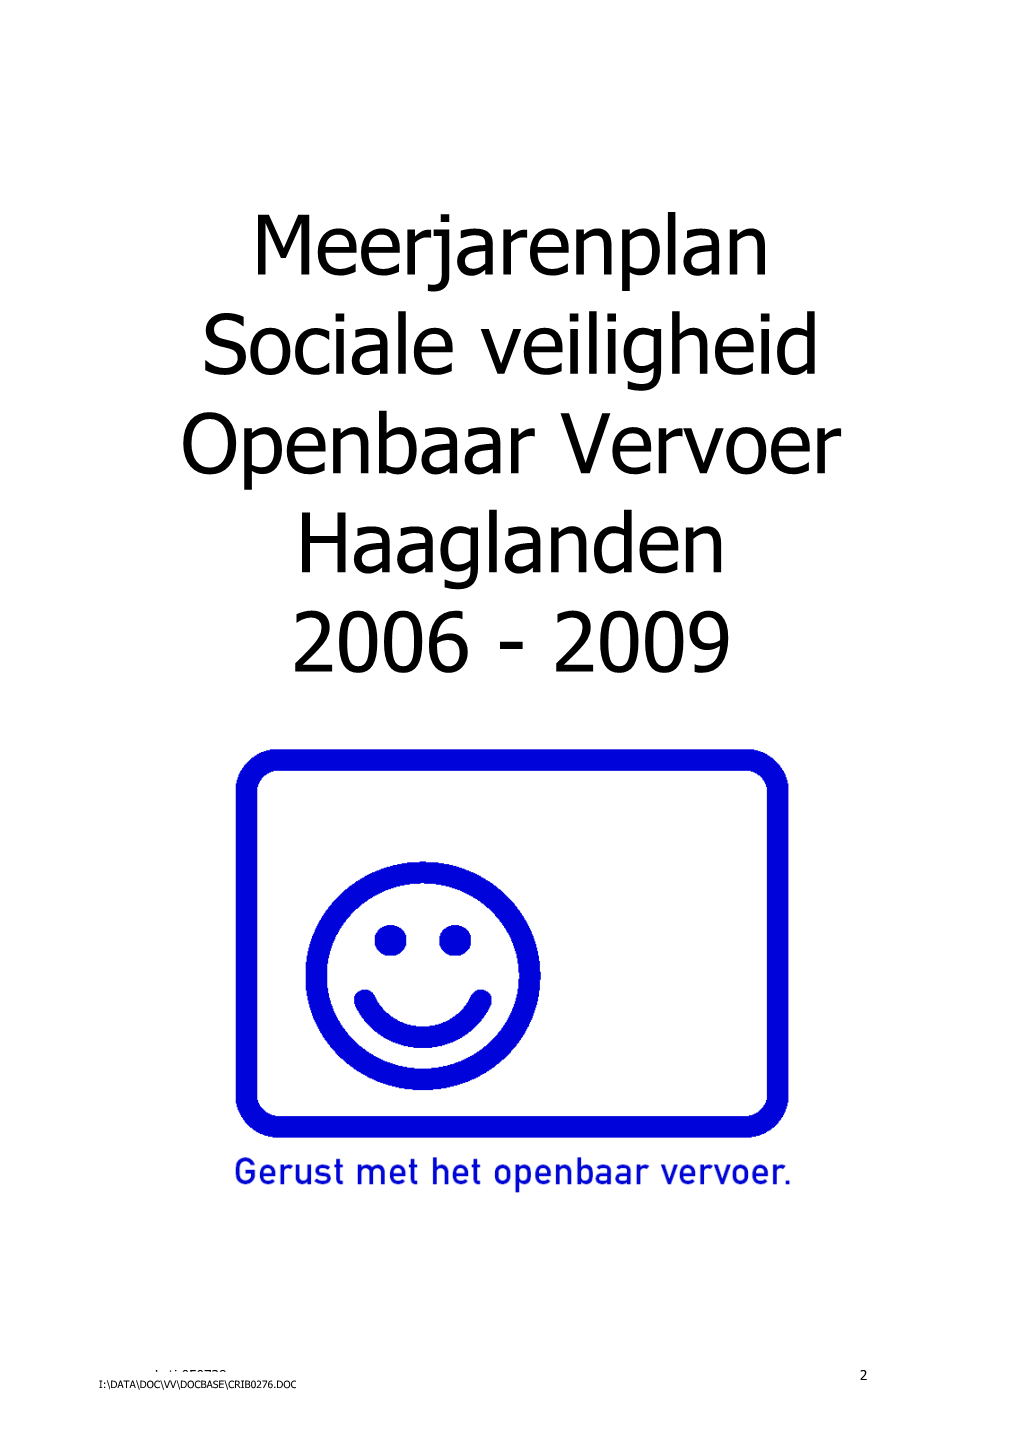 Meerjarenplan Sociale Veiligheid Openbaar Vervoer Haaglanden 2006 - 2009